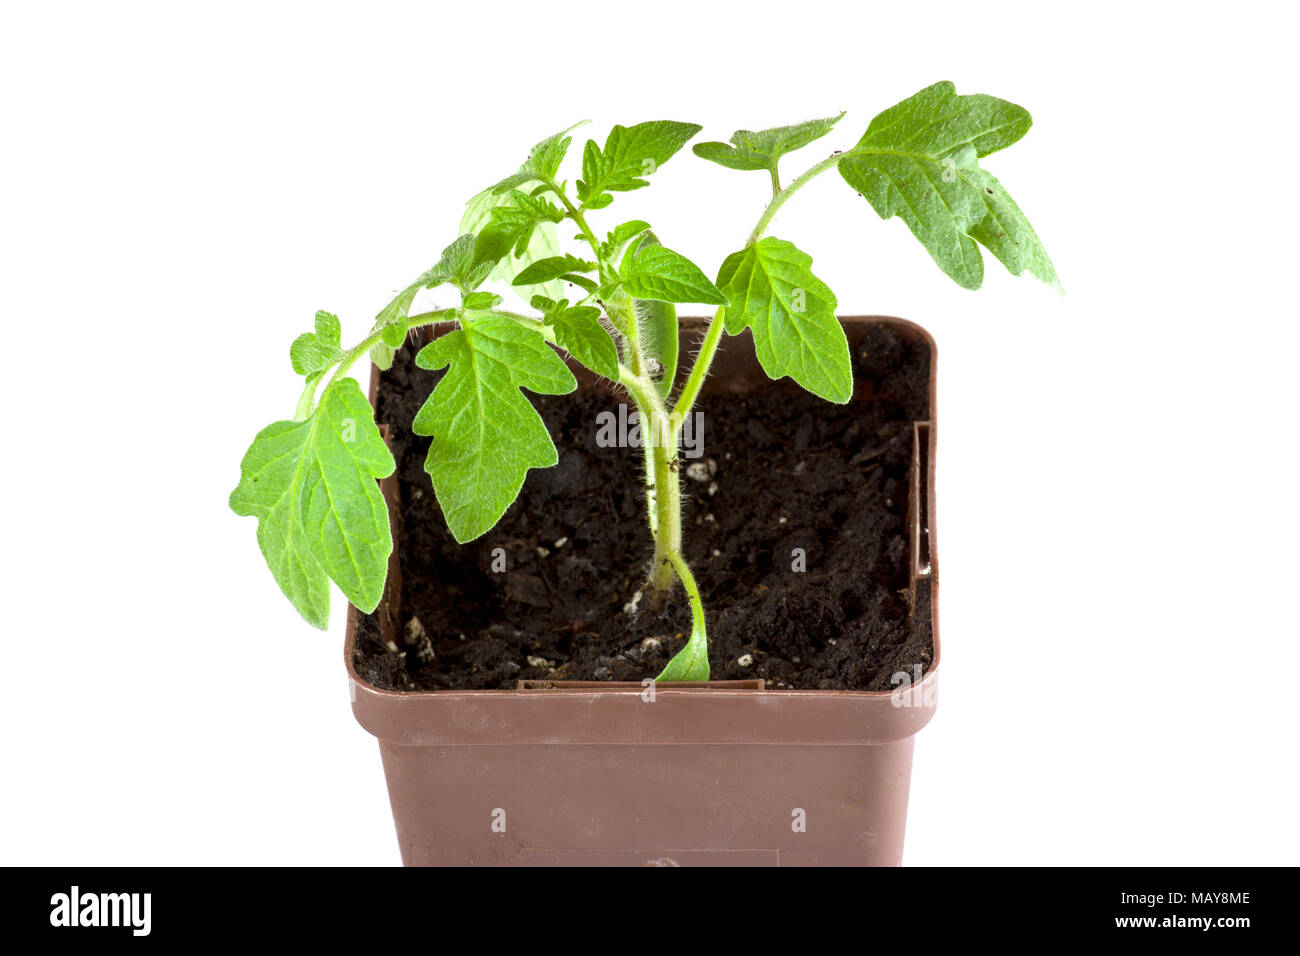 Junge Tomaten Pflanzen drinnen in den Töpfen für die Anpflanzung im Garten  Stockfotografie - Alamy